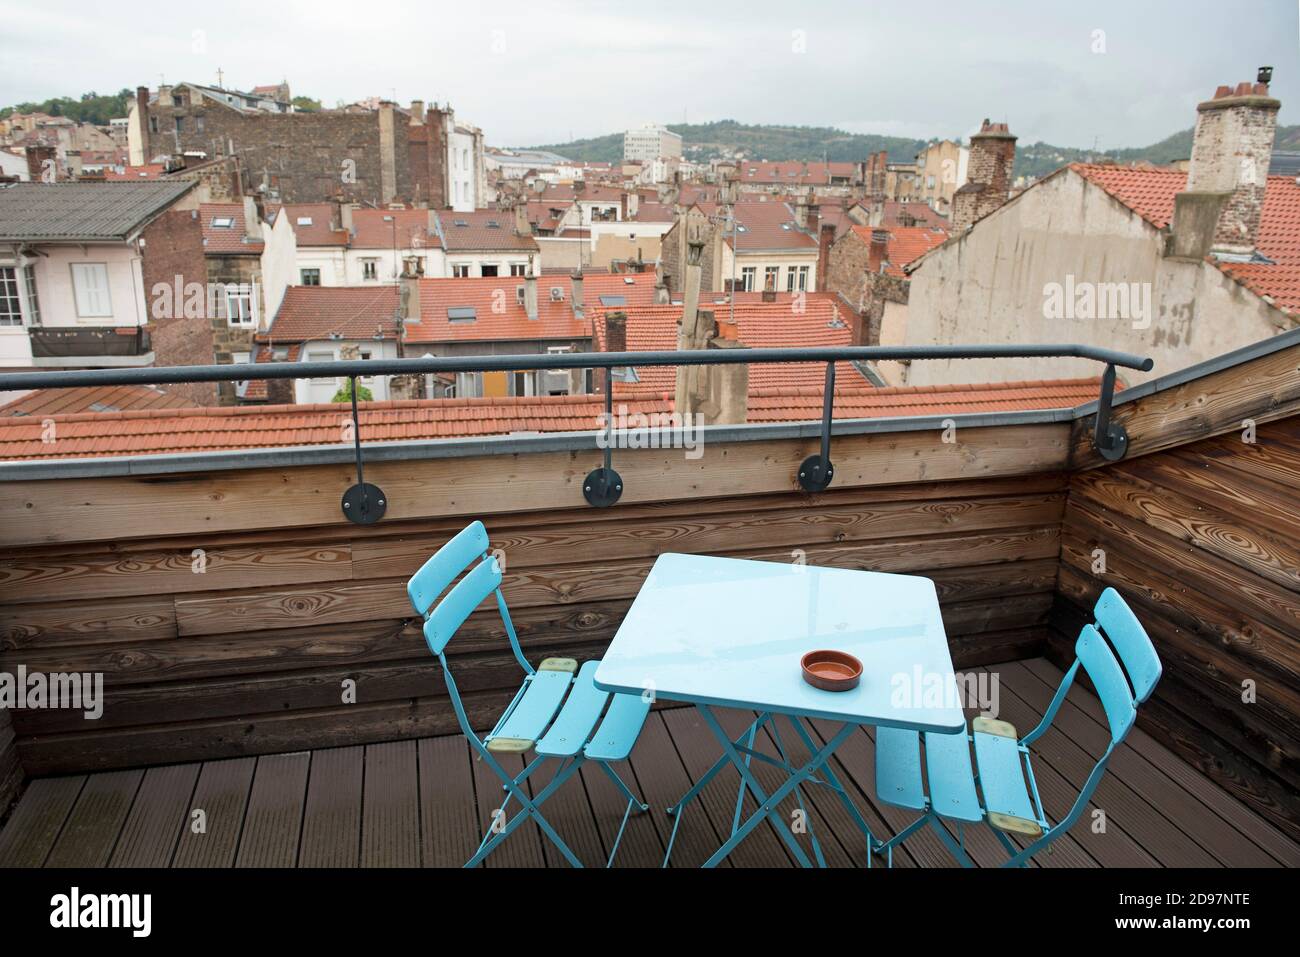 terrasse d'une chambre, Hotel Le Cheval Noir, Saint-Etienne, departement de la Loire, region Auvergne-Rhone-Alpes, France, Europe/bedroom's terrace, Stock Photo